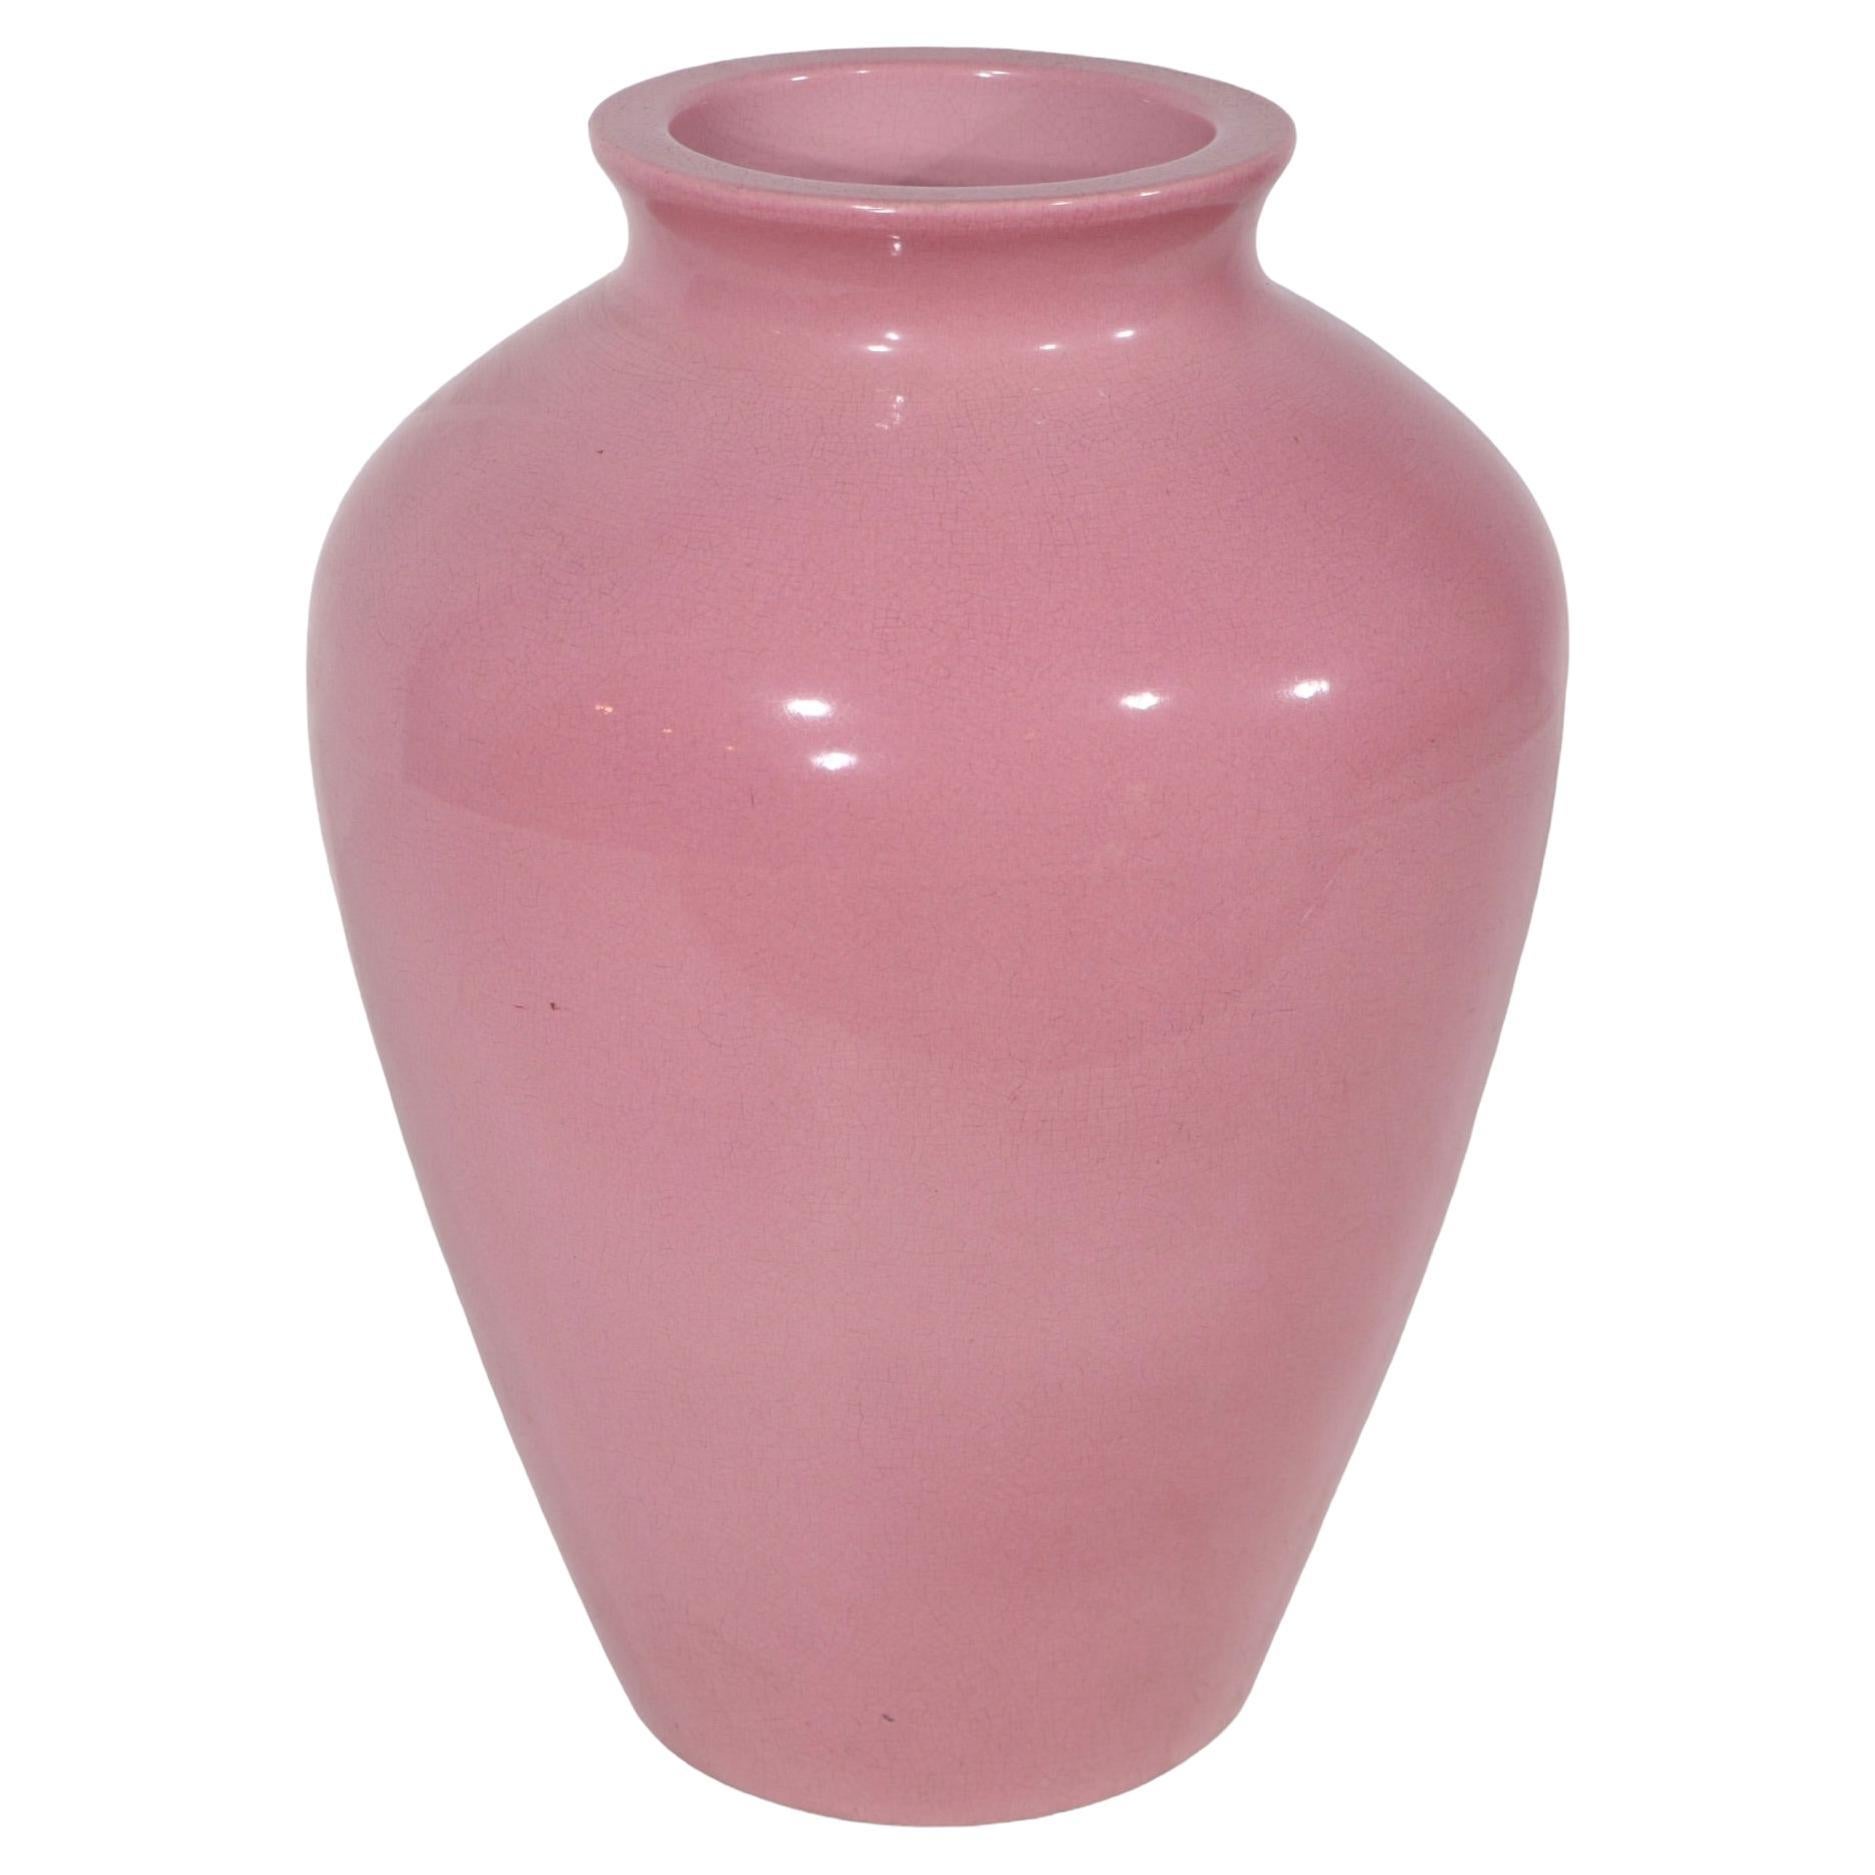 Vintage Arts and Crafts  Art Deco  Sand Jar - Dusky Pink Glaze For Sale